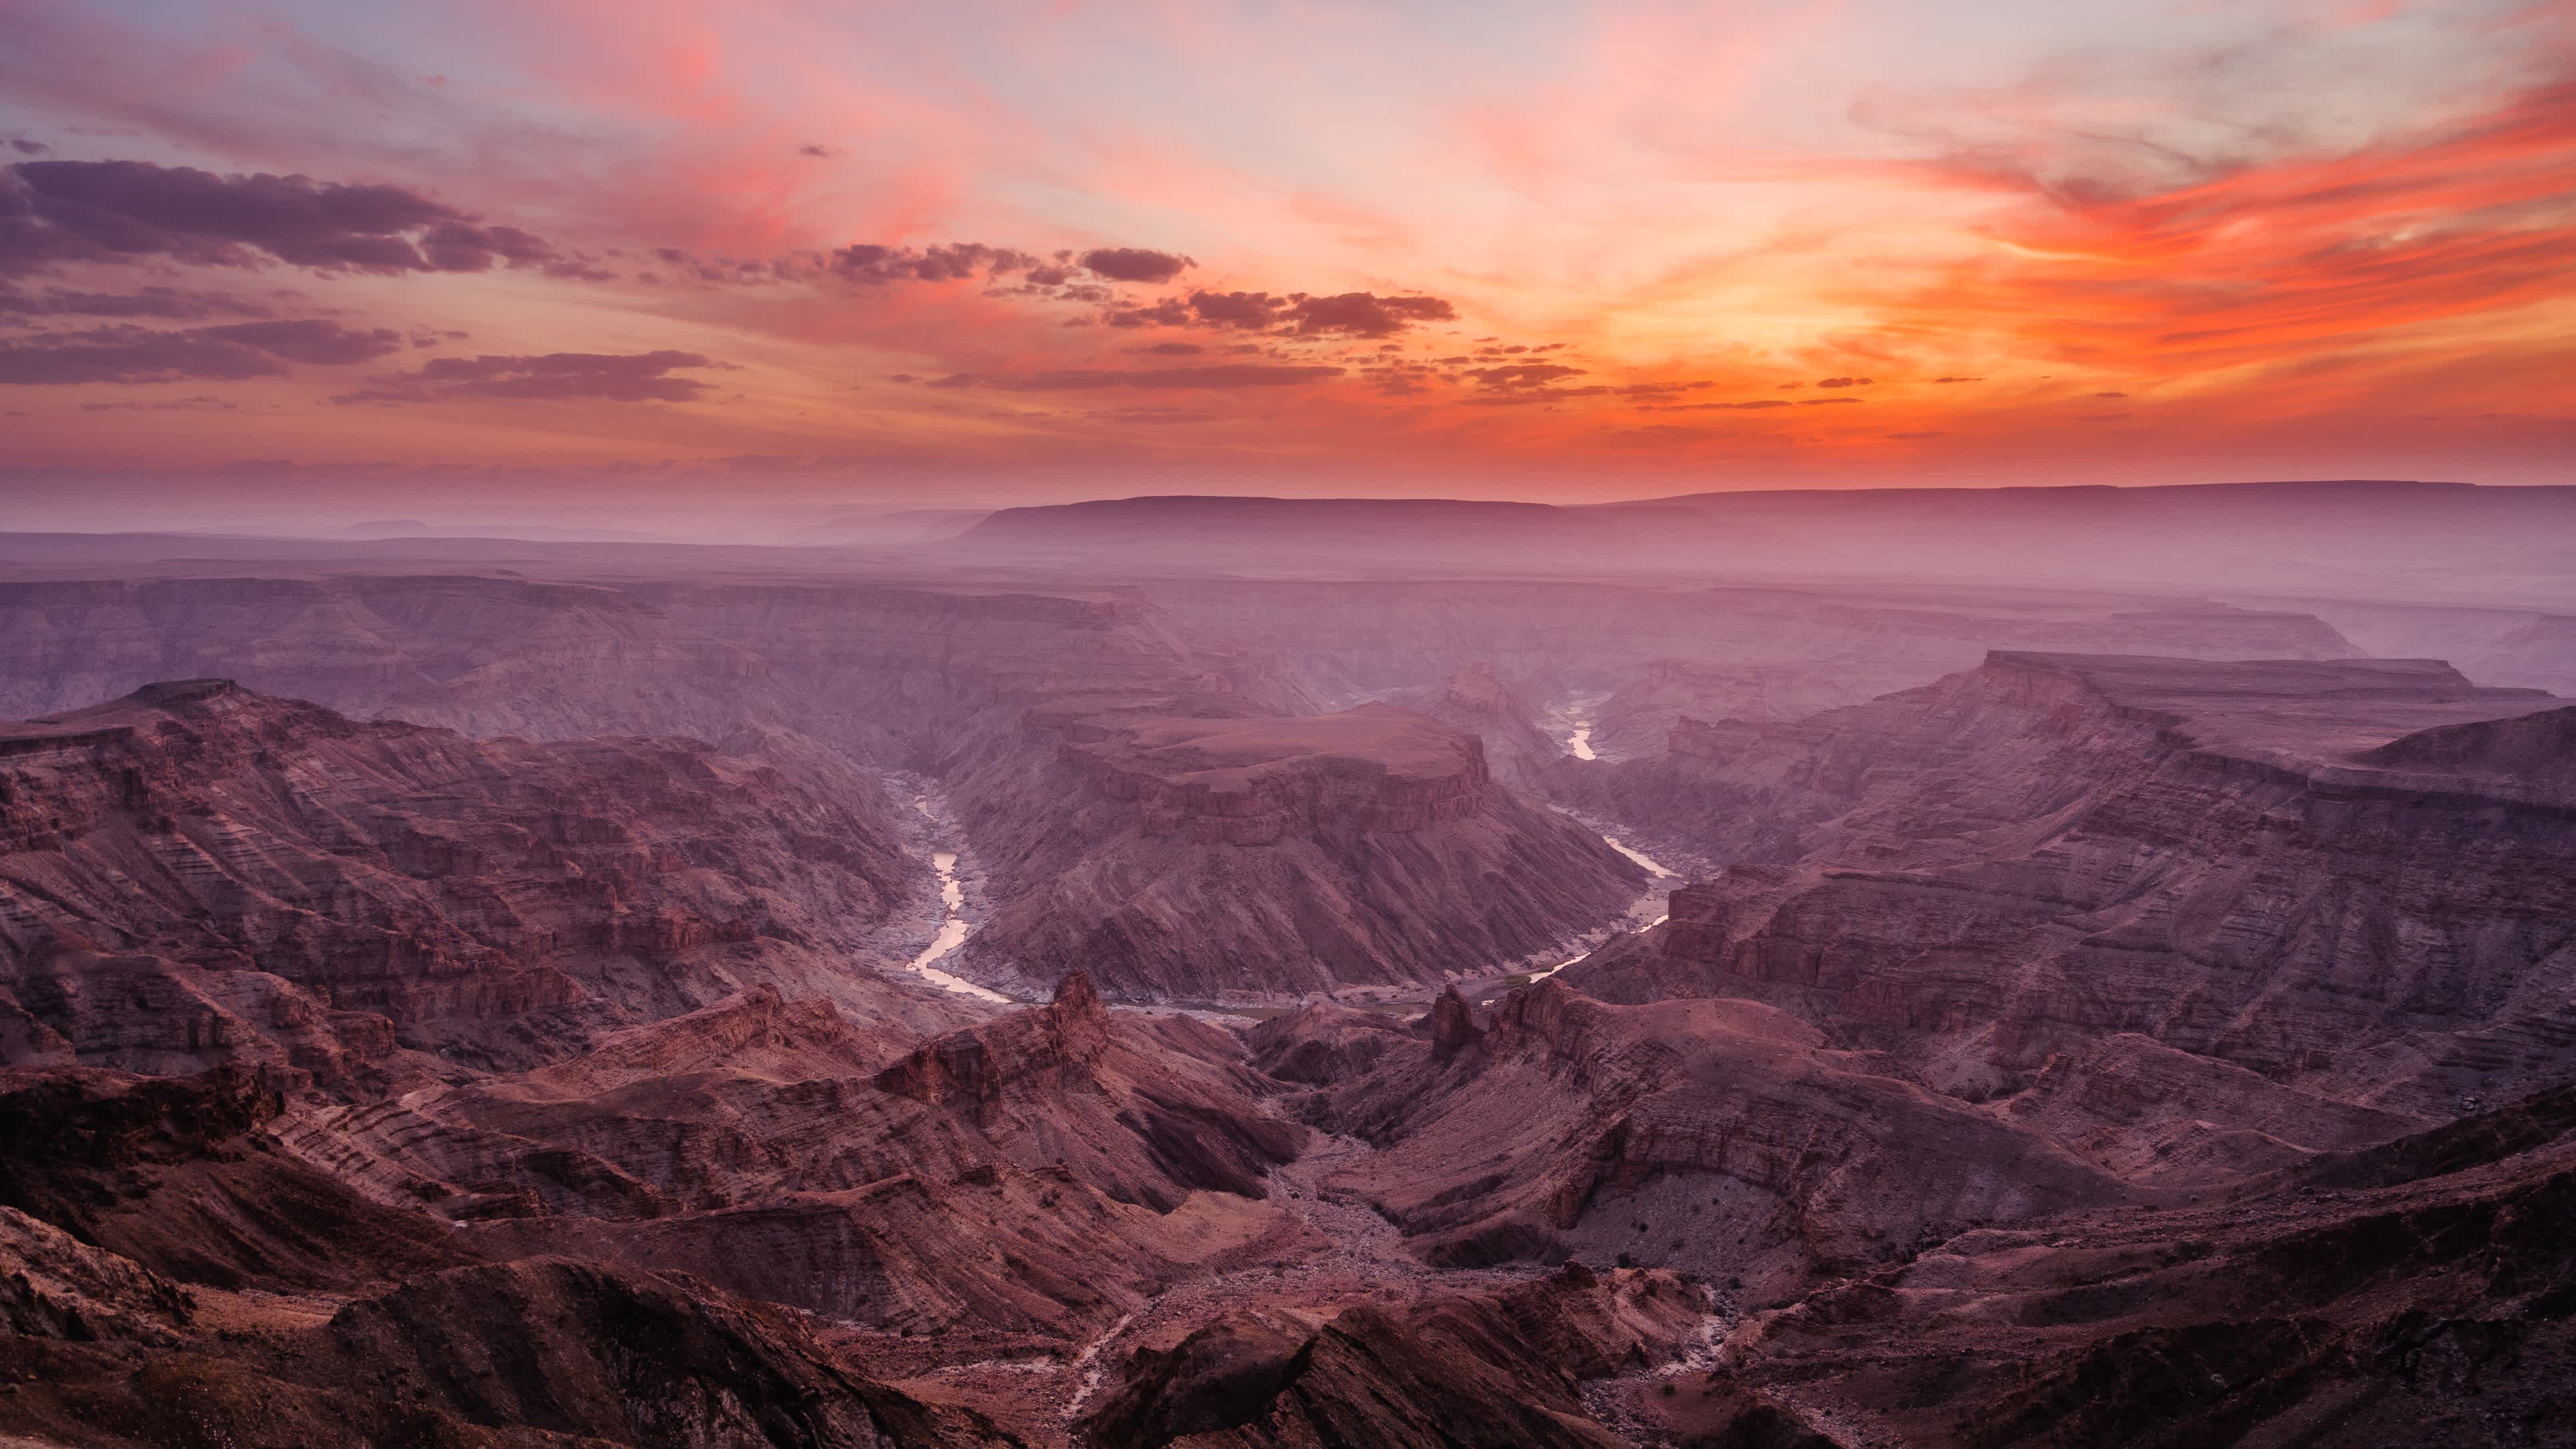 Epischer Sonnenuntergang über dem Fish River Canyon in Namibia, dem zweitgrößten Canyon der Welt und dem größten in Afrika.